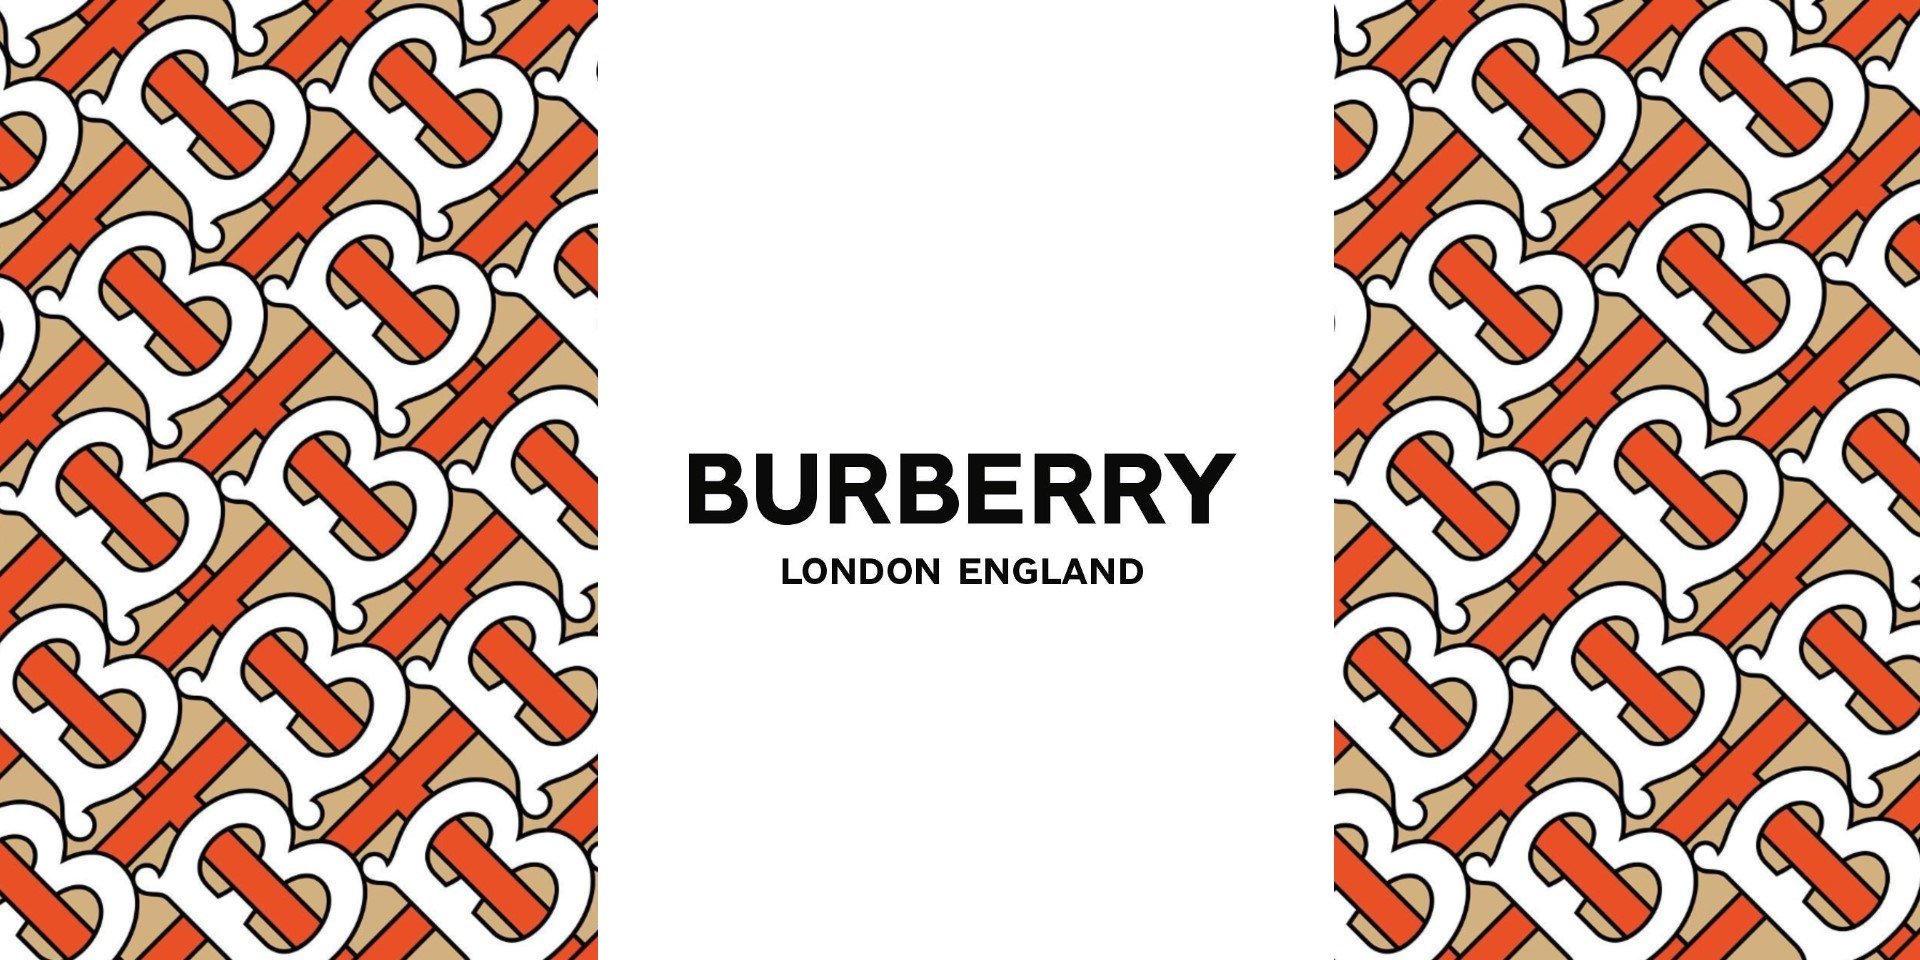 Burberry is Best Luxury Brands